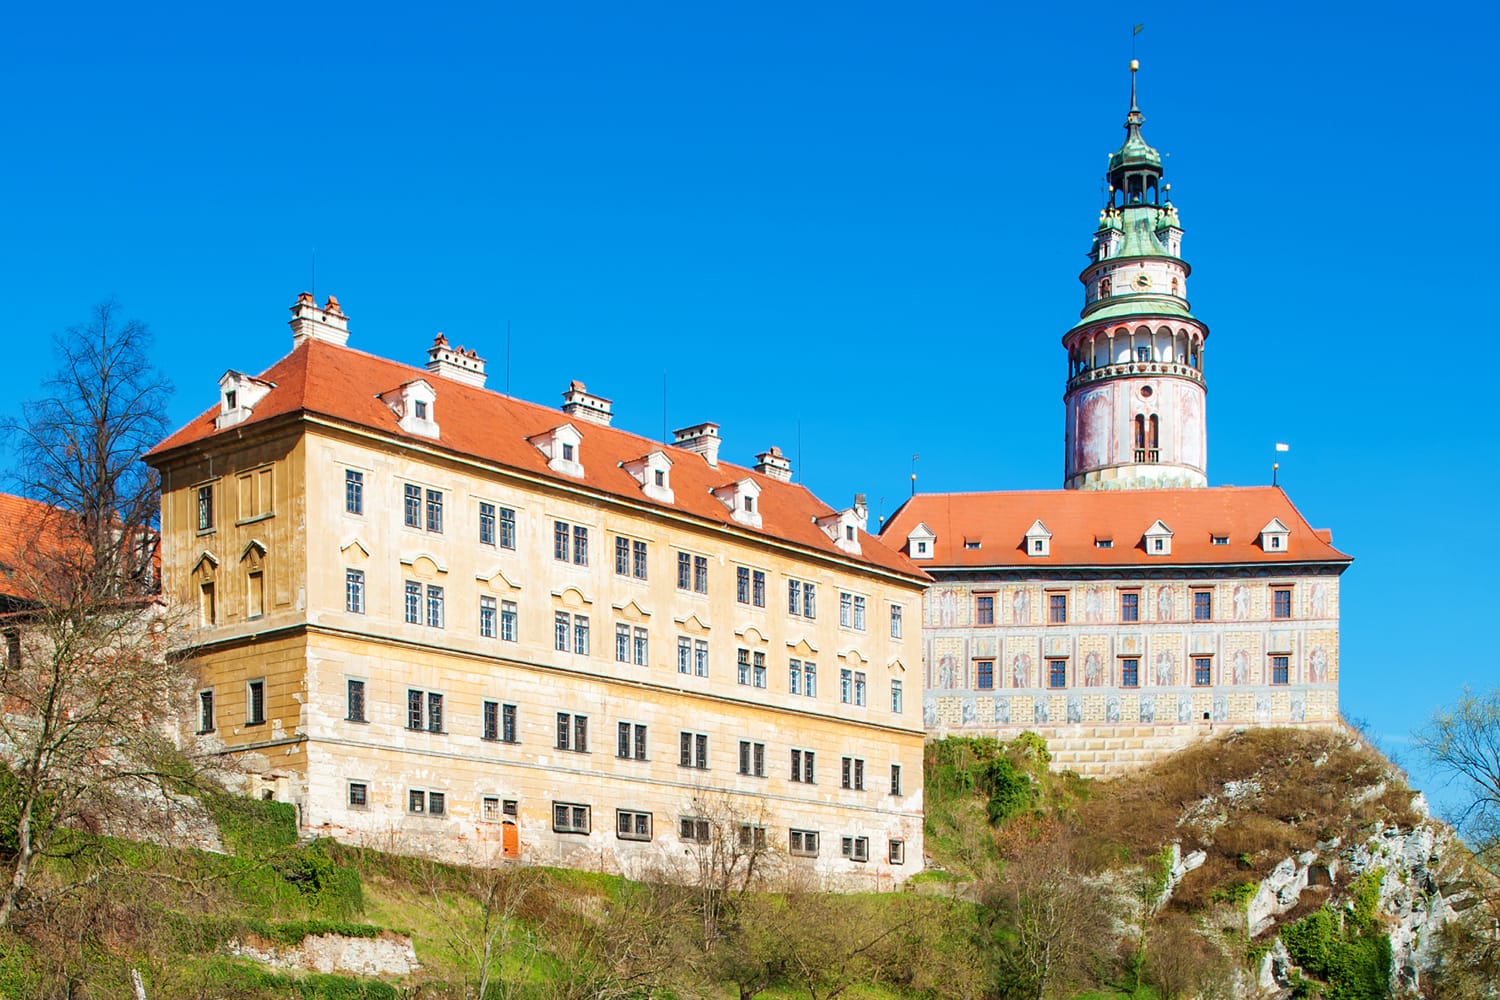 Kastil dengan menara bundar yang terkenal di Cesky Krumlov, Republik Ceko tercermin di Sungai Vltava